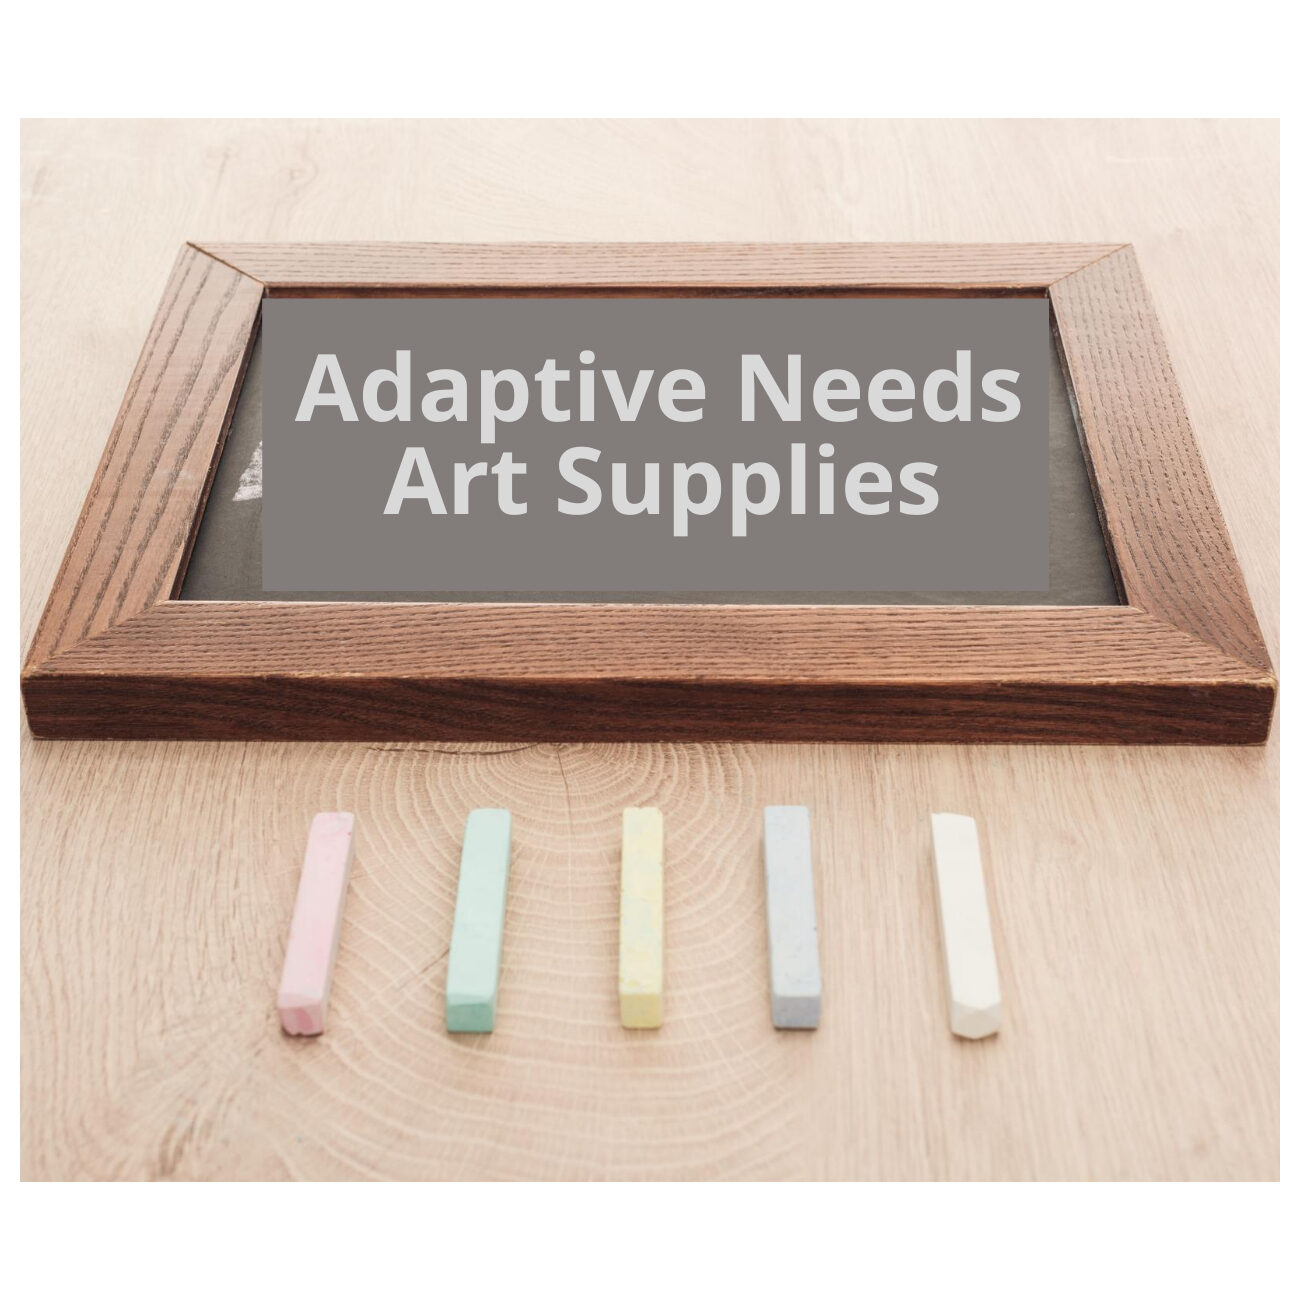 Adaptive needs Art Supplies1300x1300 px(1)